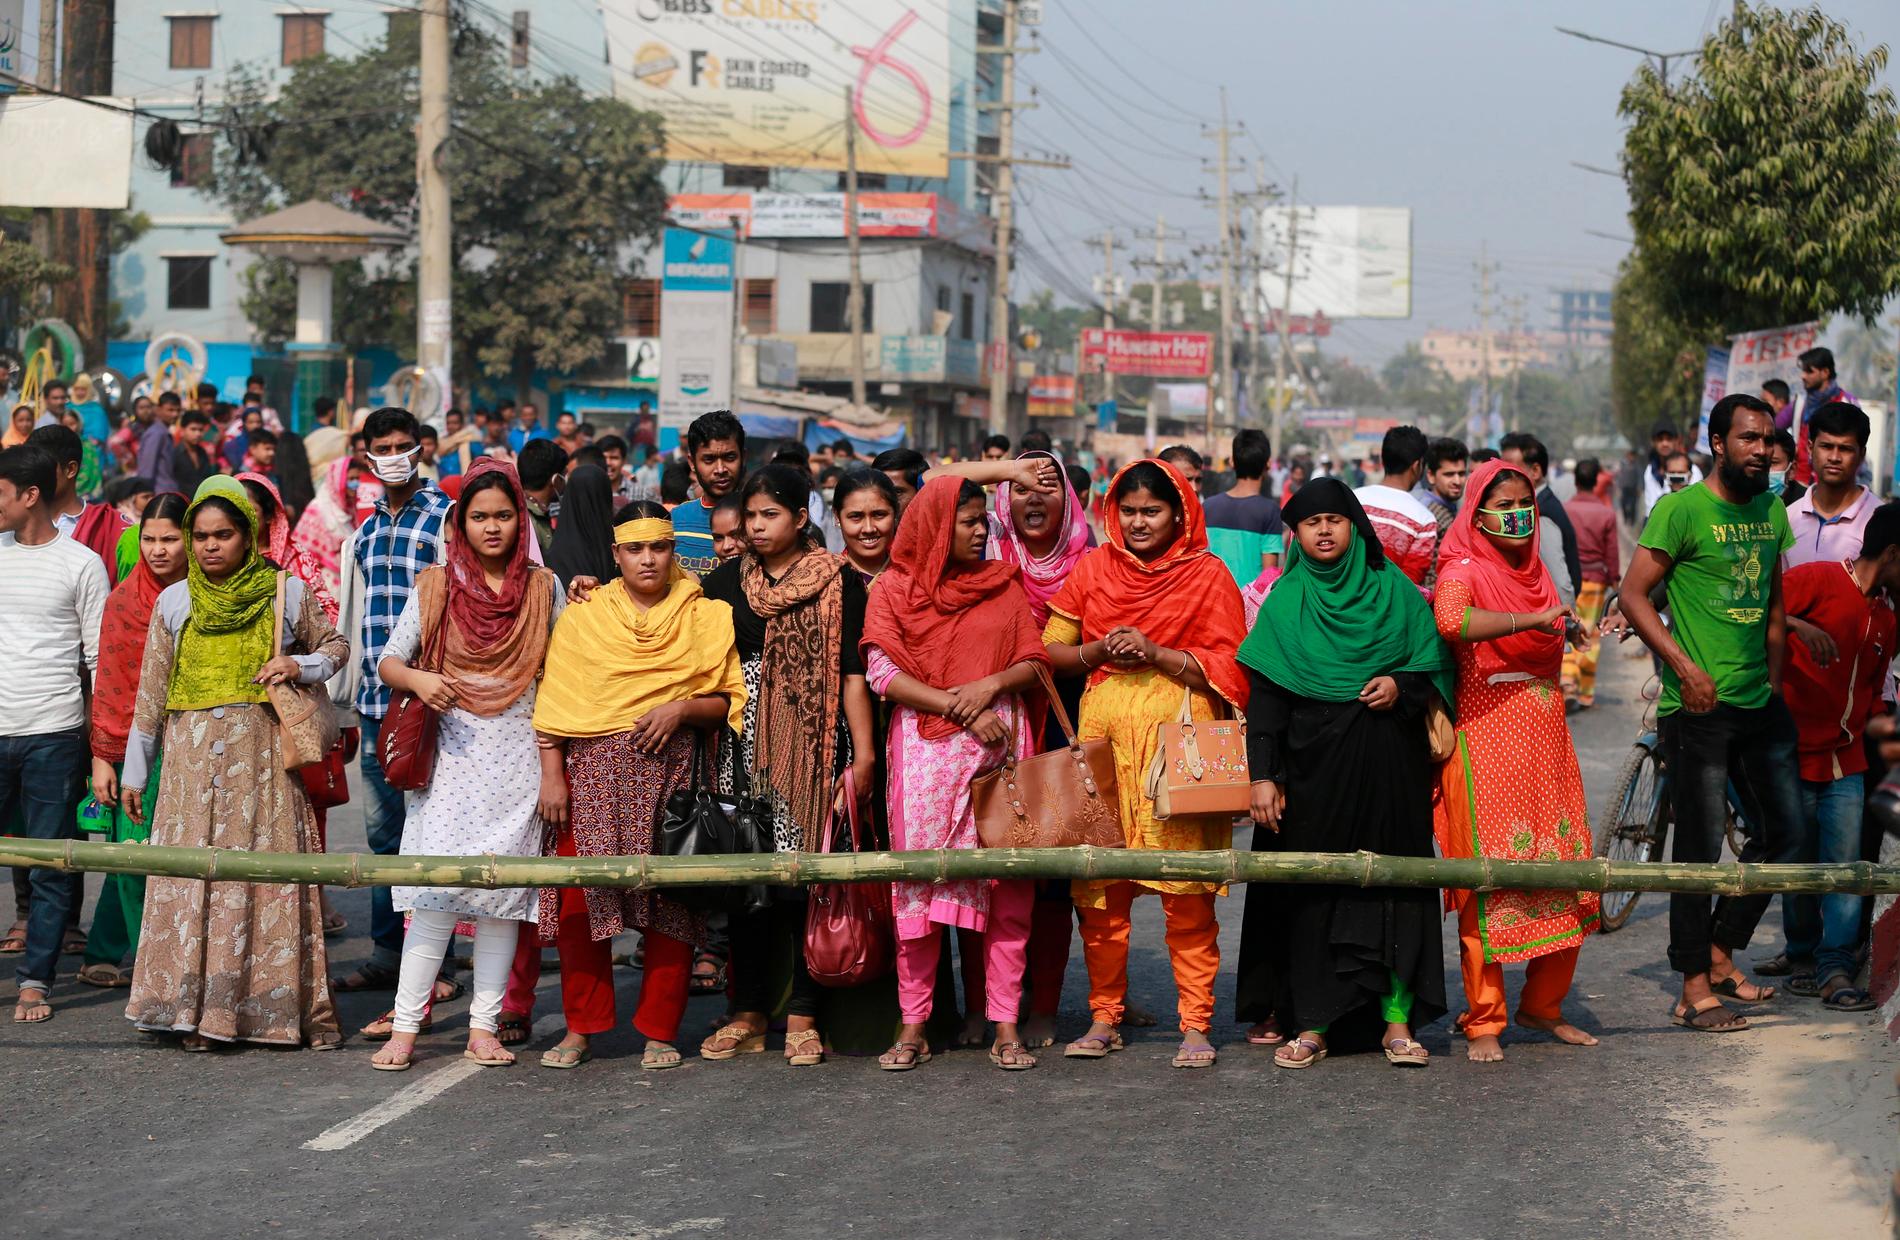 Textilarbetare i Bangladesh protesterar mot låga löner. Bilden är från en protest utanför huvudstaden Dhaka den 9 januari i år.